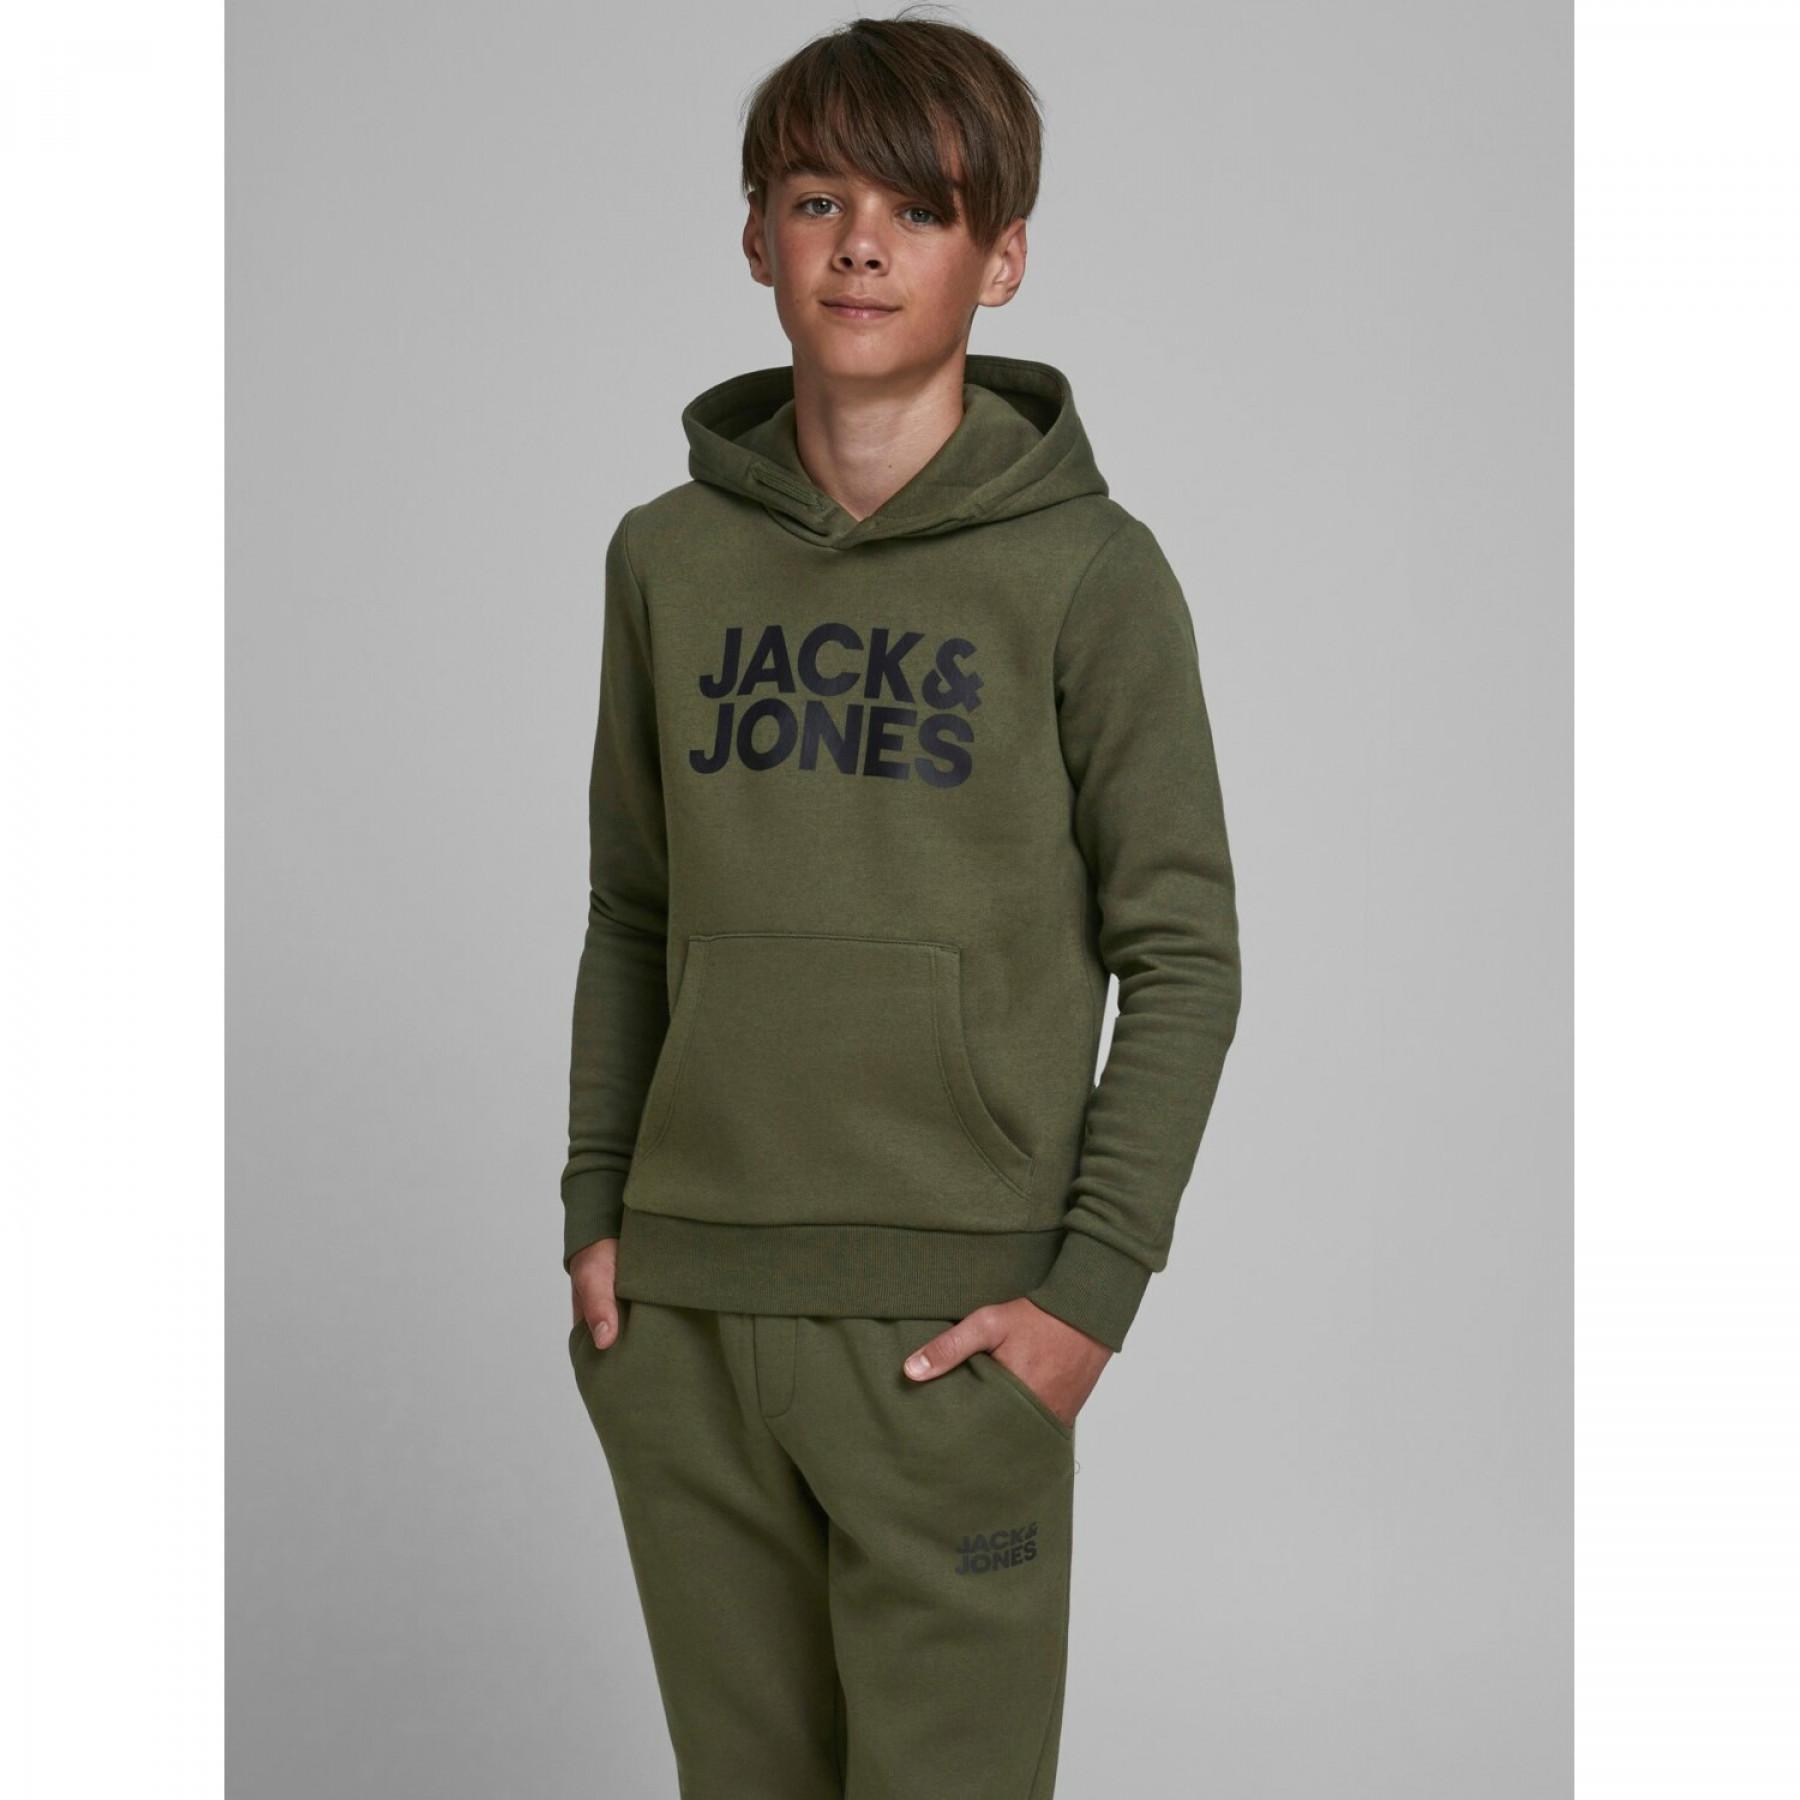 Bluza dziecięca z kapturem Jack & Jones Corp Logo